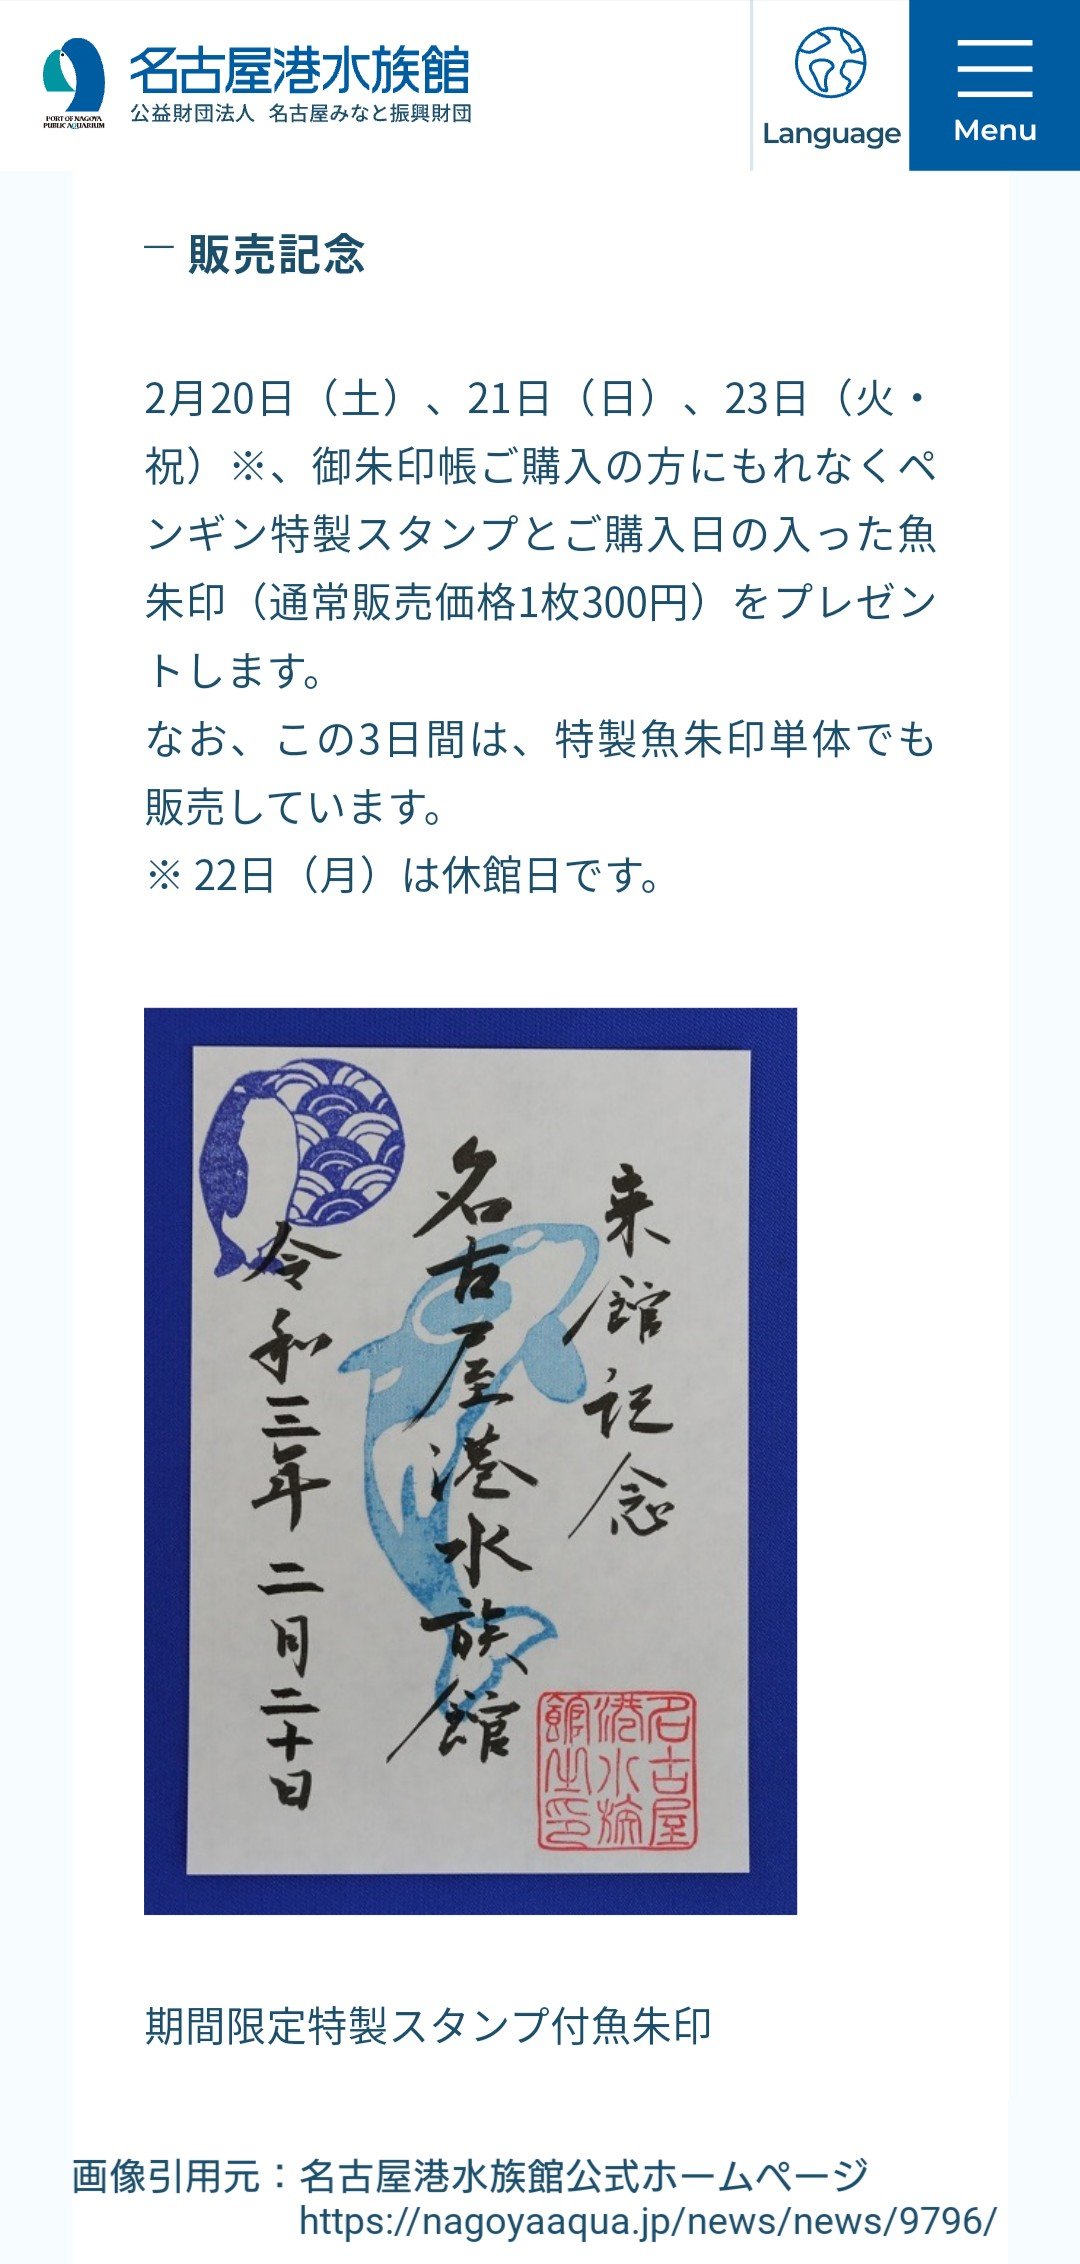 鈴木 (名港水族館ファン) on Twitter: 